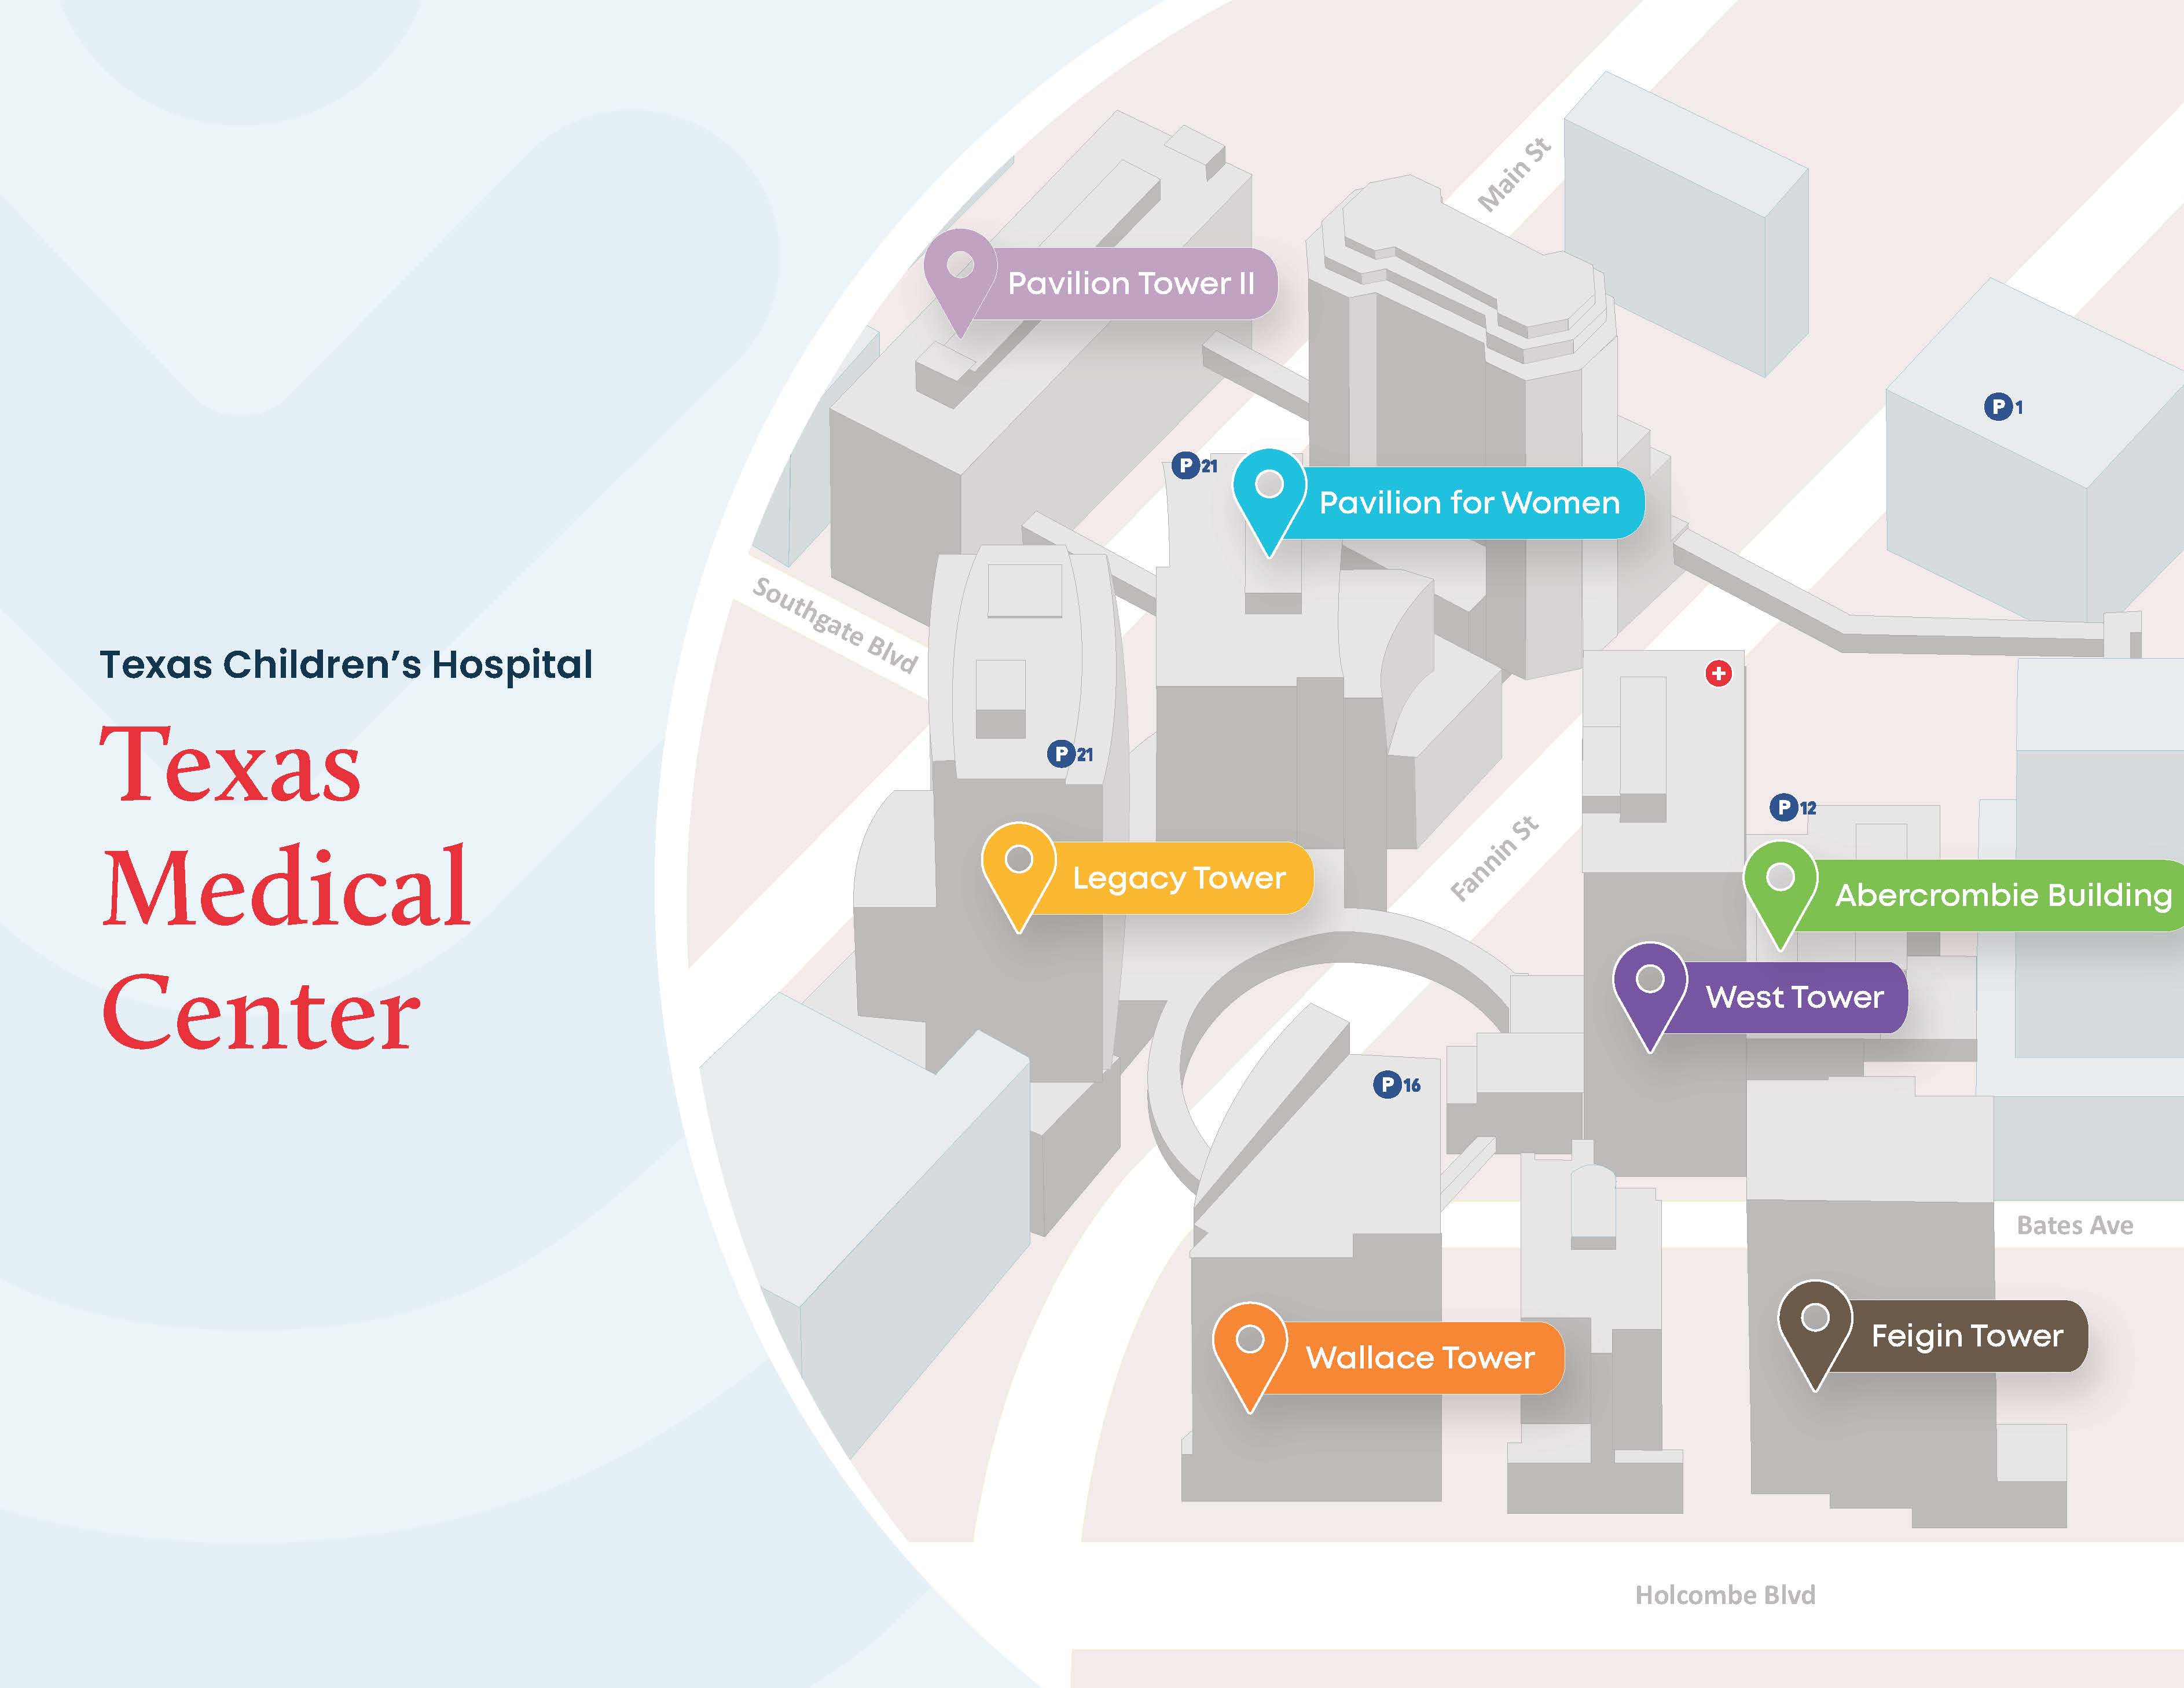 Texas Medical Center Campus Map